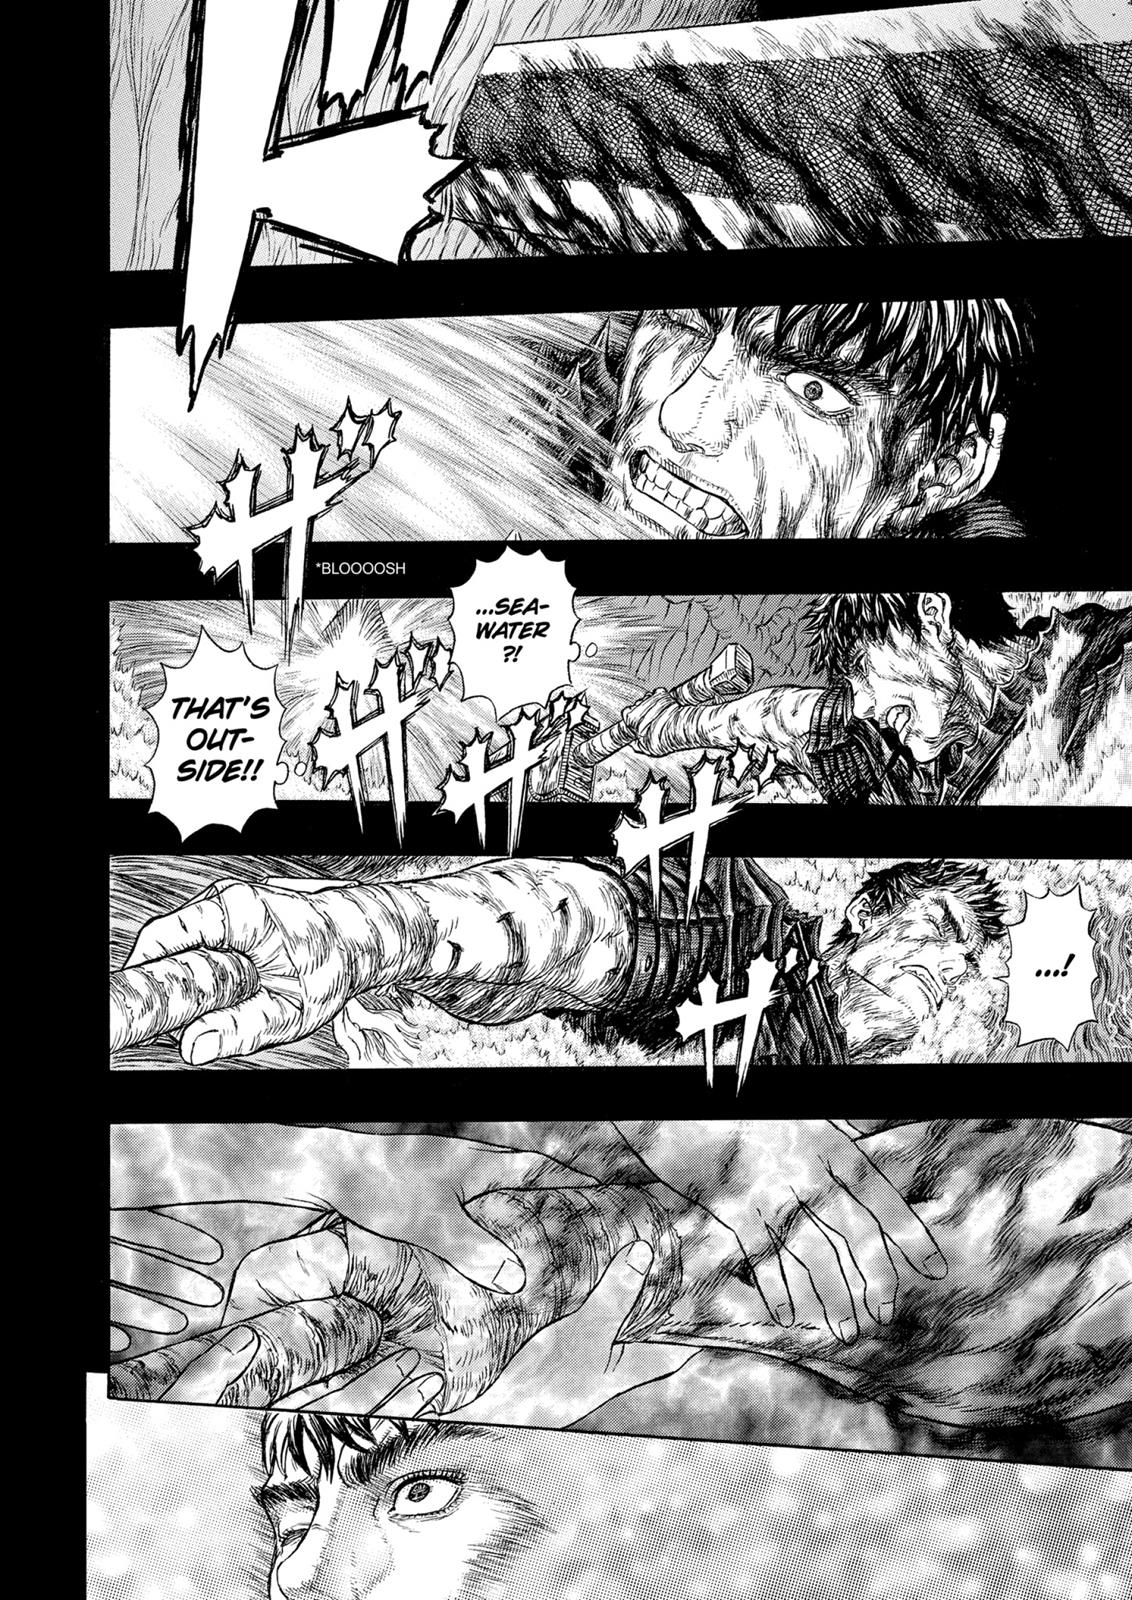 Berserk Manga Chapter 327 image 19